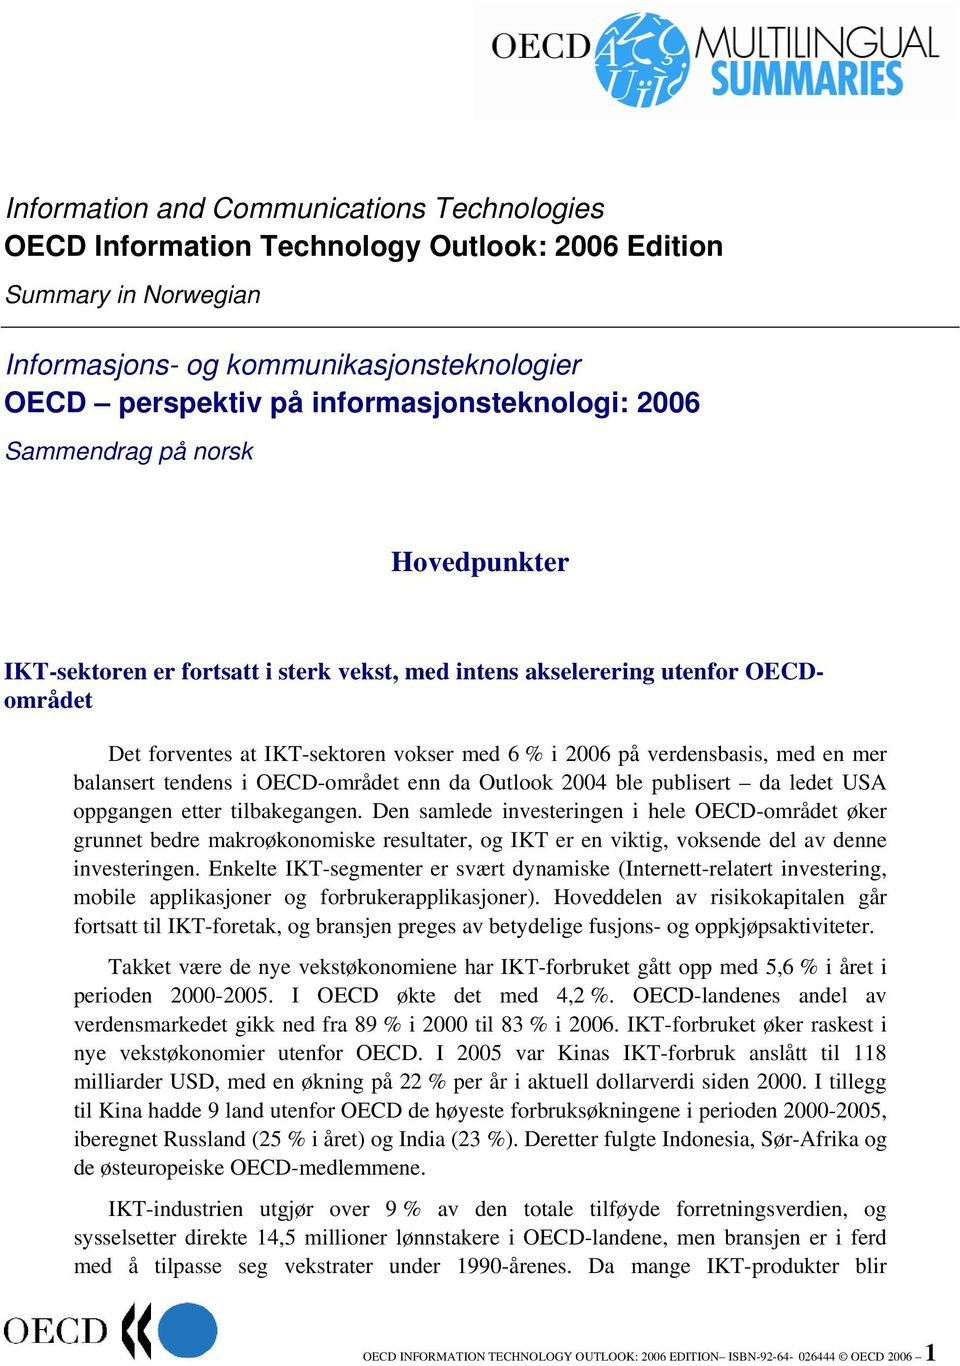 mer balansert tendens i OECD-området enn da Outlook 2004 ble publisert da ledet USA oppgangen etter tilbakegangen.